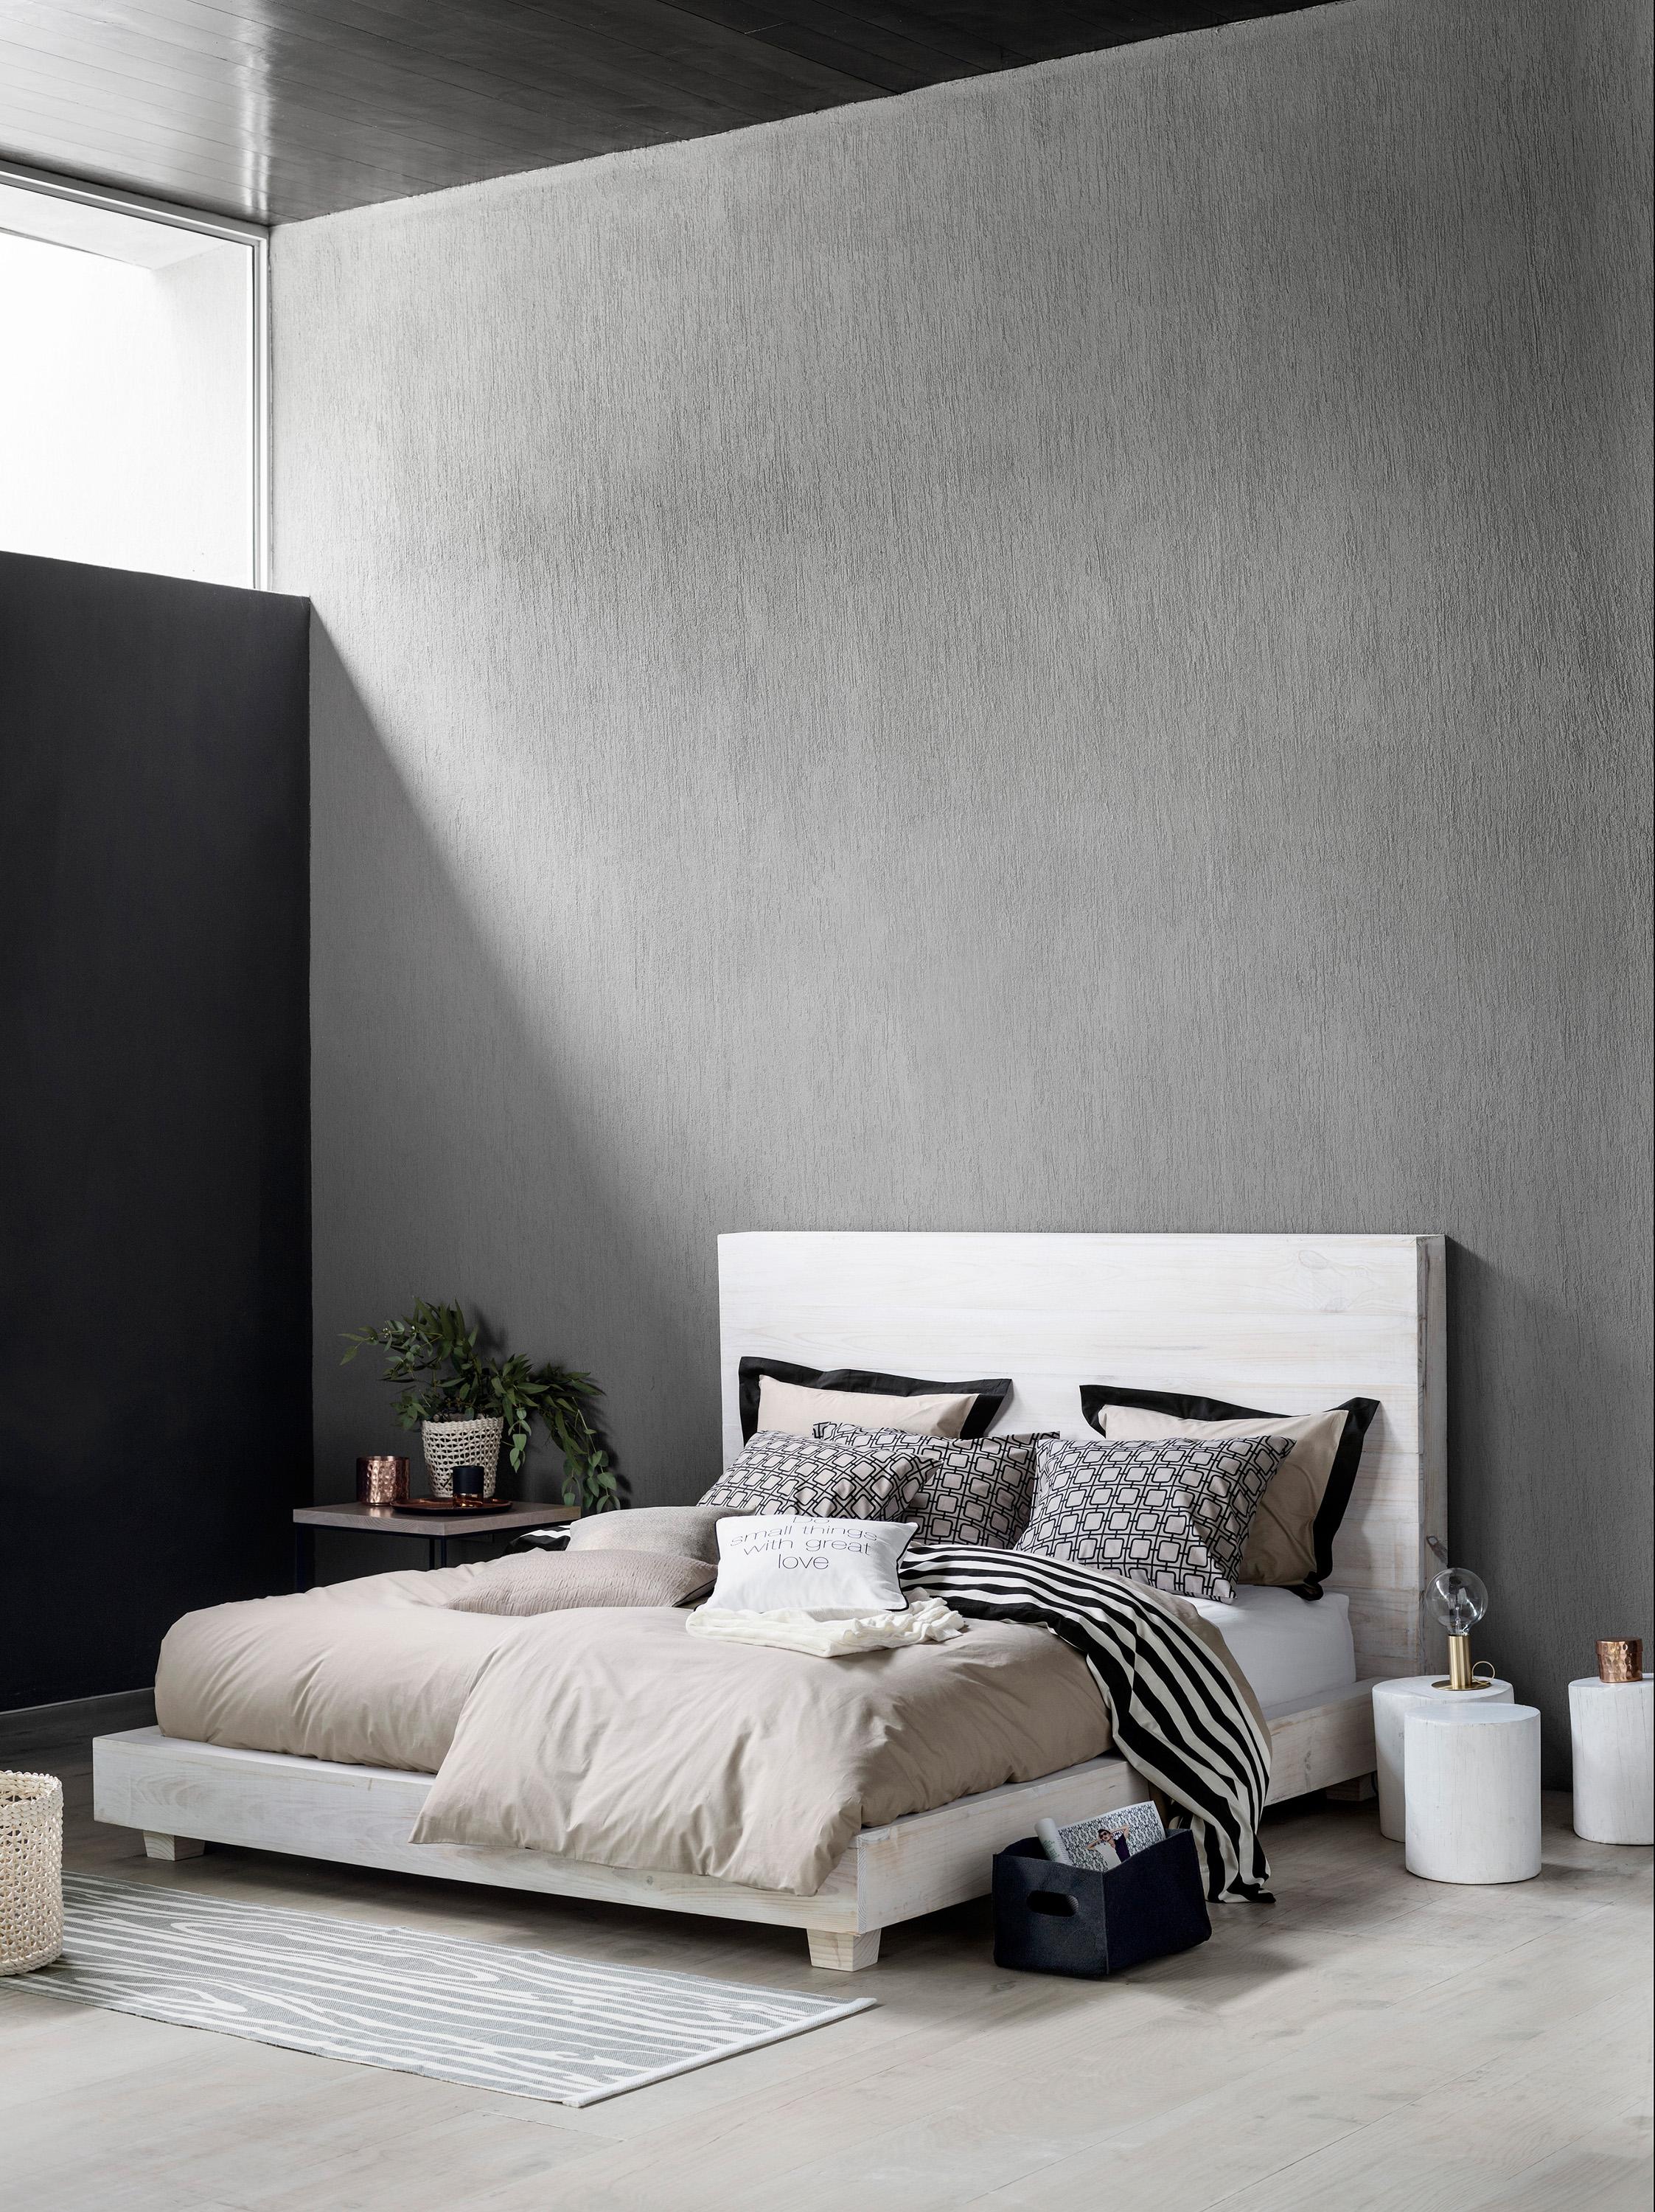 Schlafzimmer in Grau gestalten #bett #hocker #teppich #bettwäsche #tagesdecke #loft #weißerhocker #pflanzendeko ©H&M Home